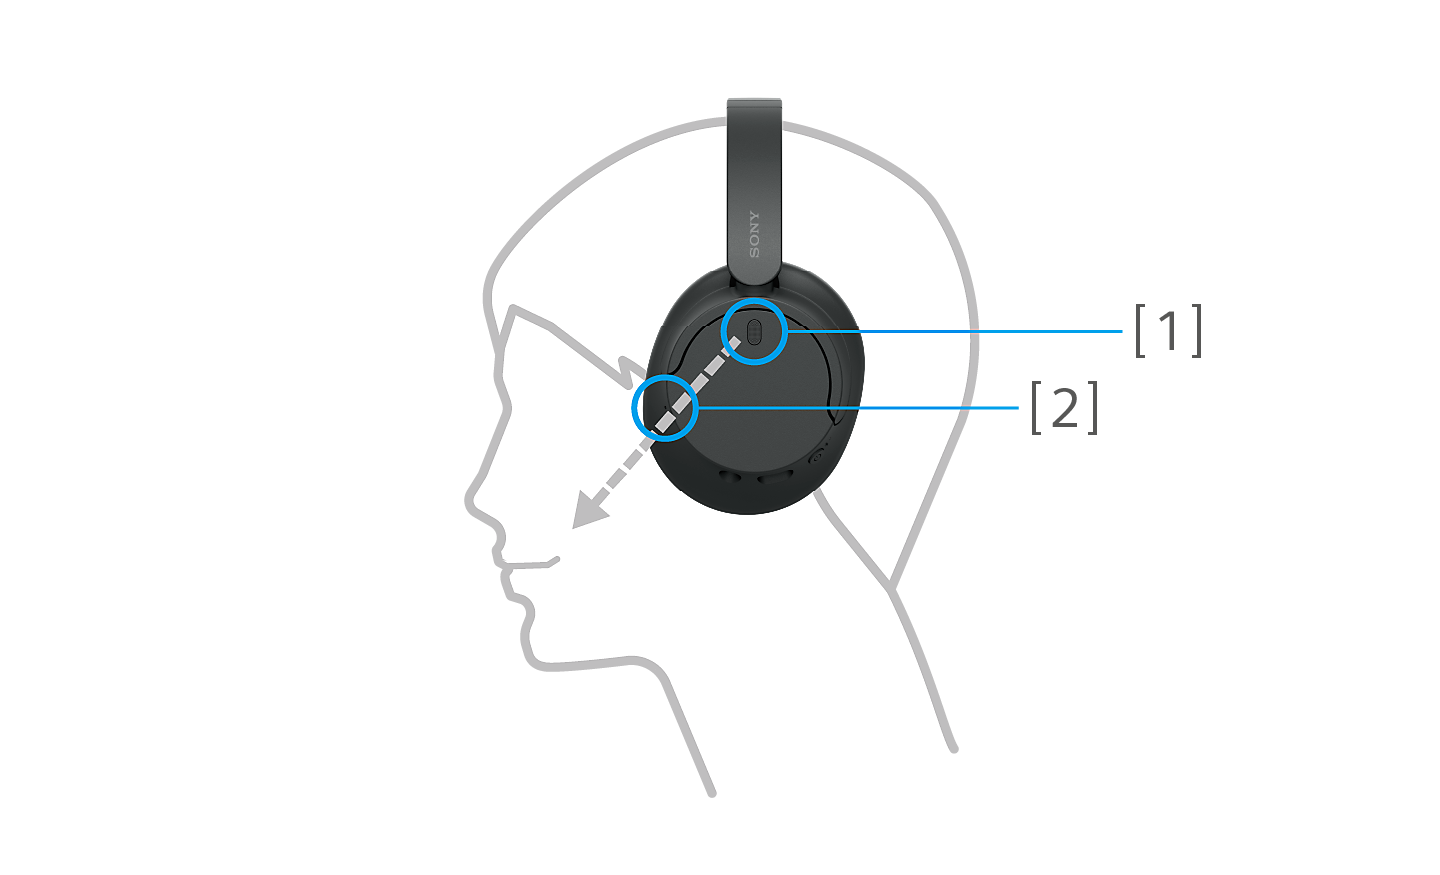 Bild eines Kopfumrisses, der schwarze WH-CH720 Kopfhörer von Sony trägt, wobei die Zahlen 1 und 2 zur Ohrmuschel zeigen